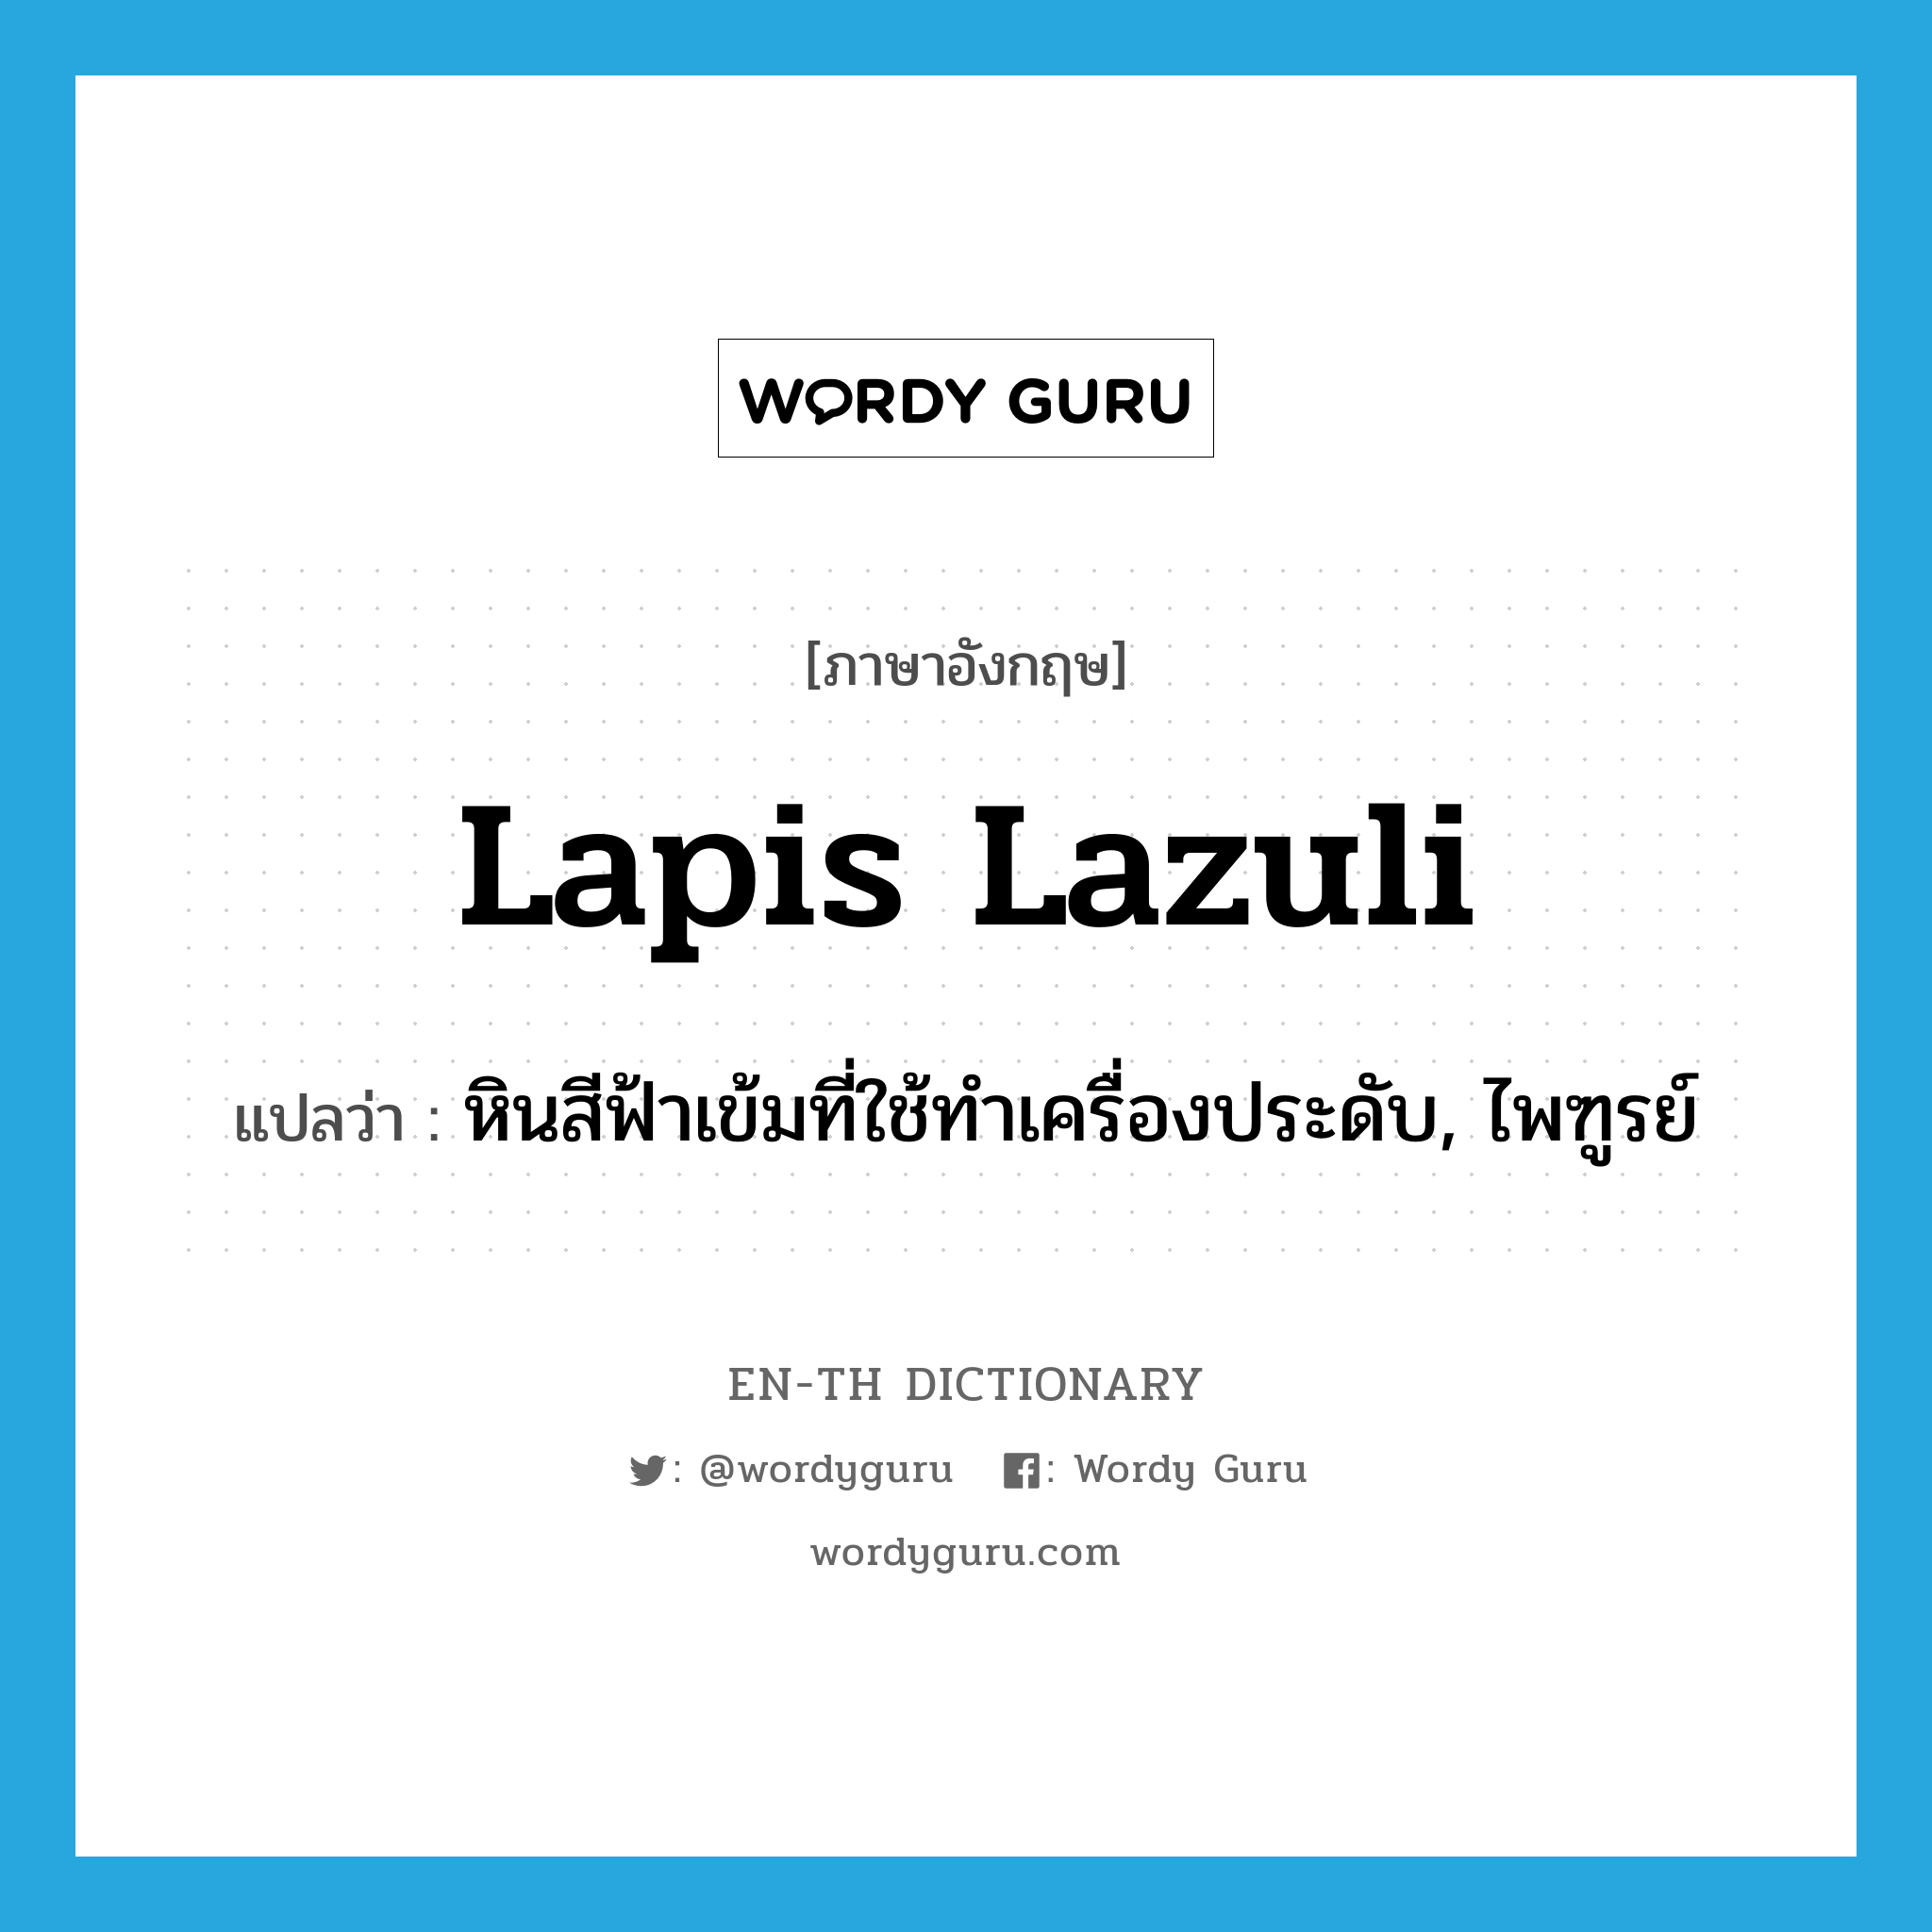 lapis lazuli แปลว่า?, คำศัพท์ภาษาอังกฤษ lapis lazuli แปลว่า หินสีฟ้าเข้มที่ใช้ทำเครื่องประดับ, ไพฑูรย์ ประเภท N หมวด N